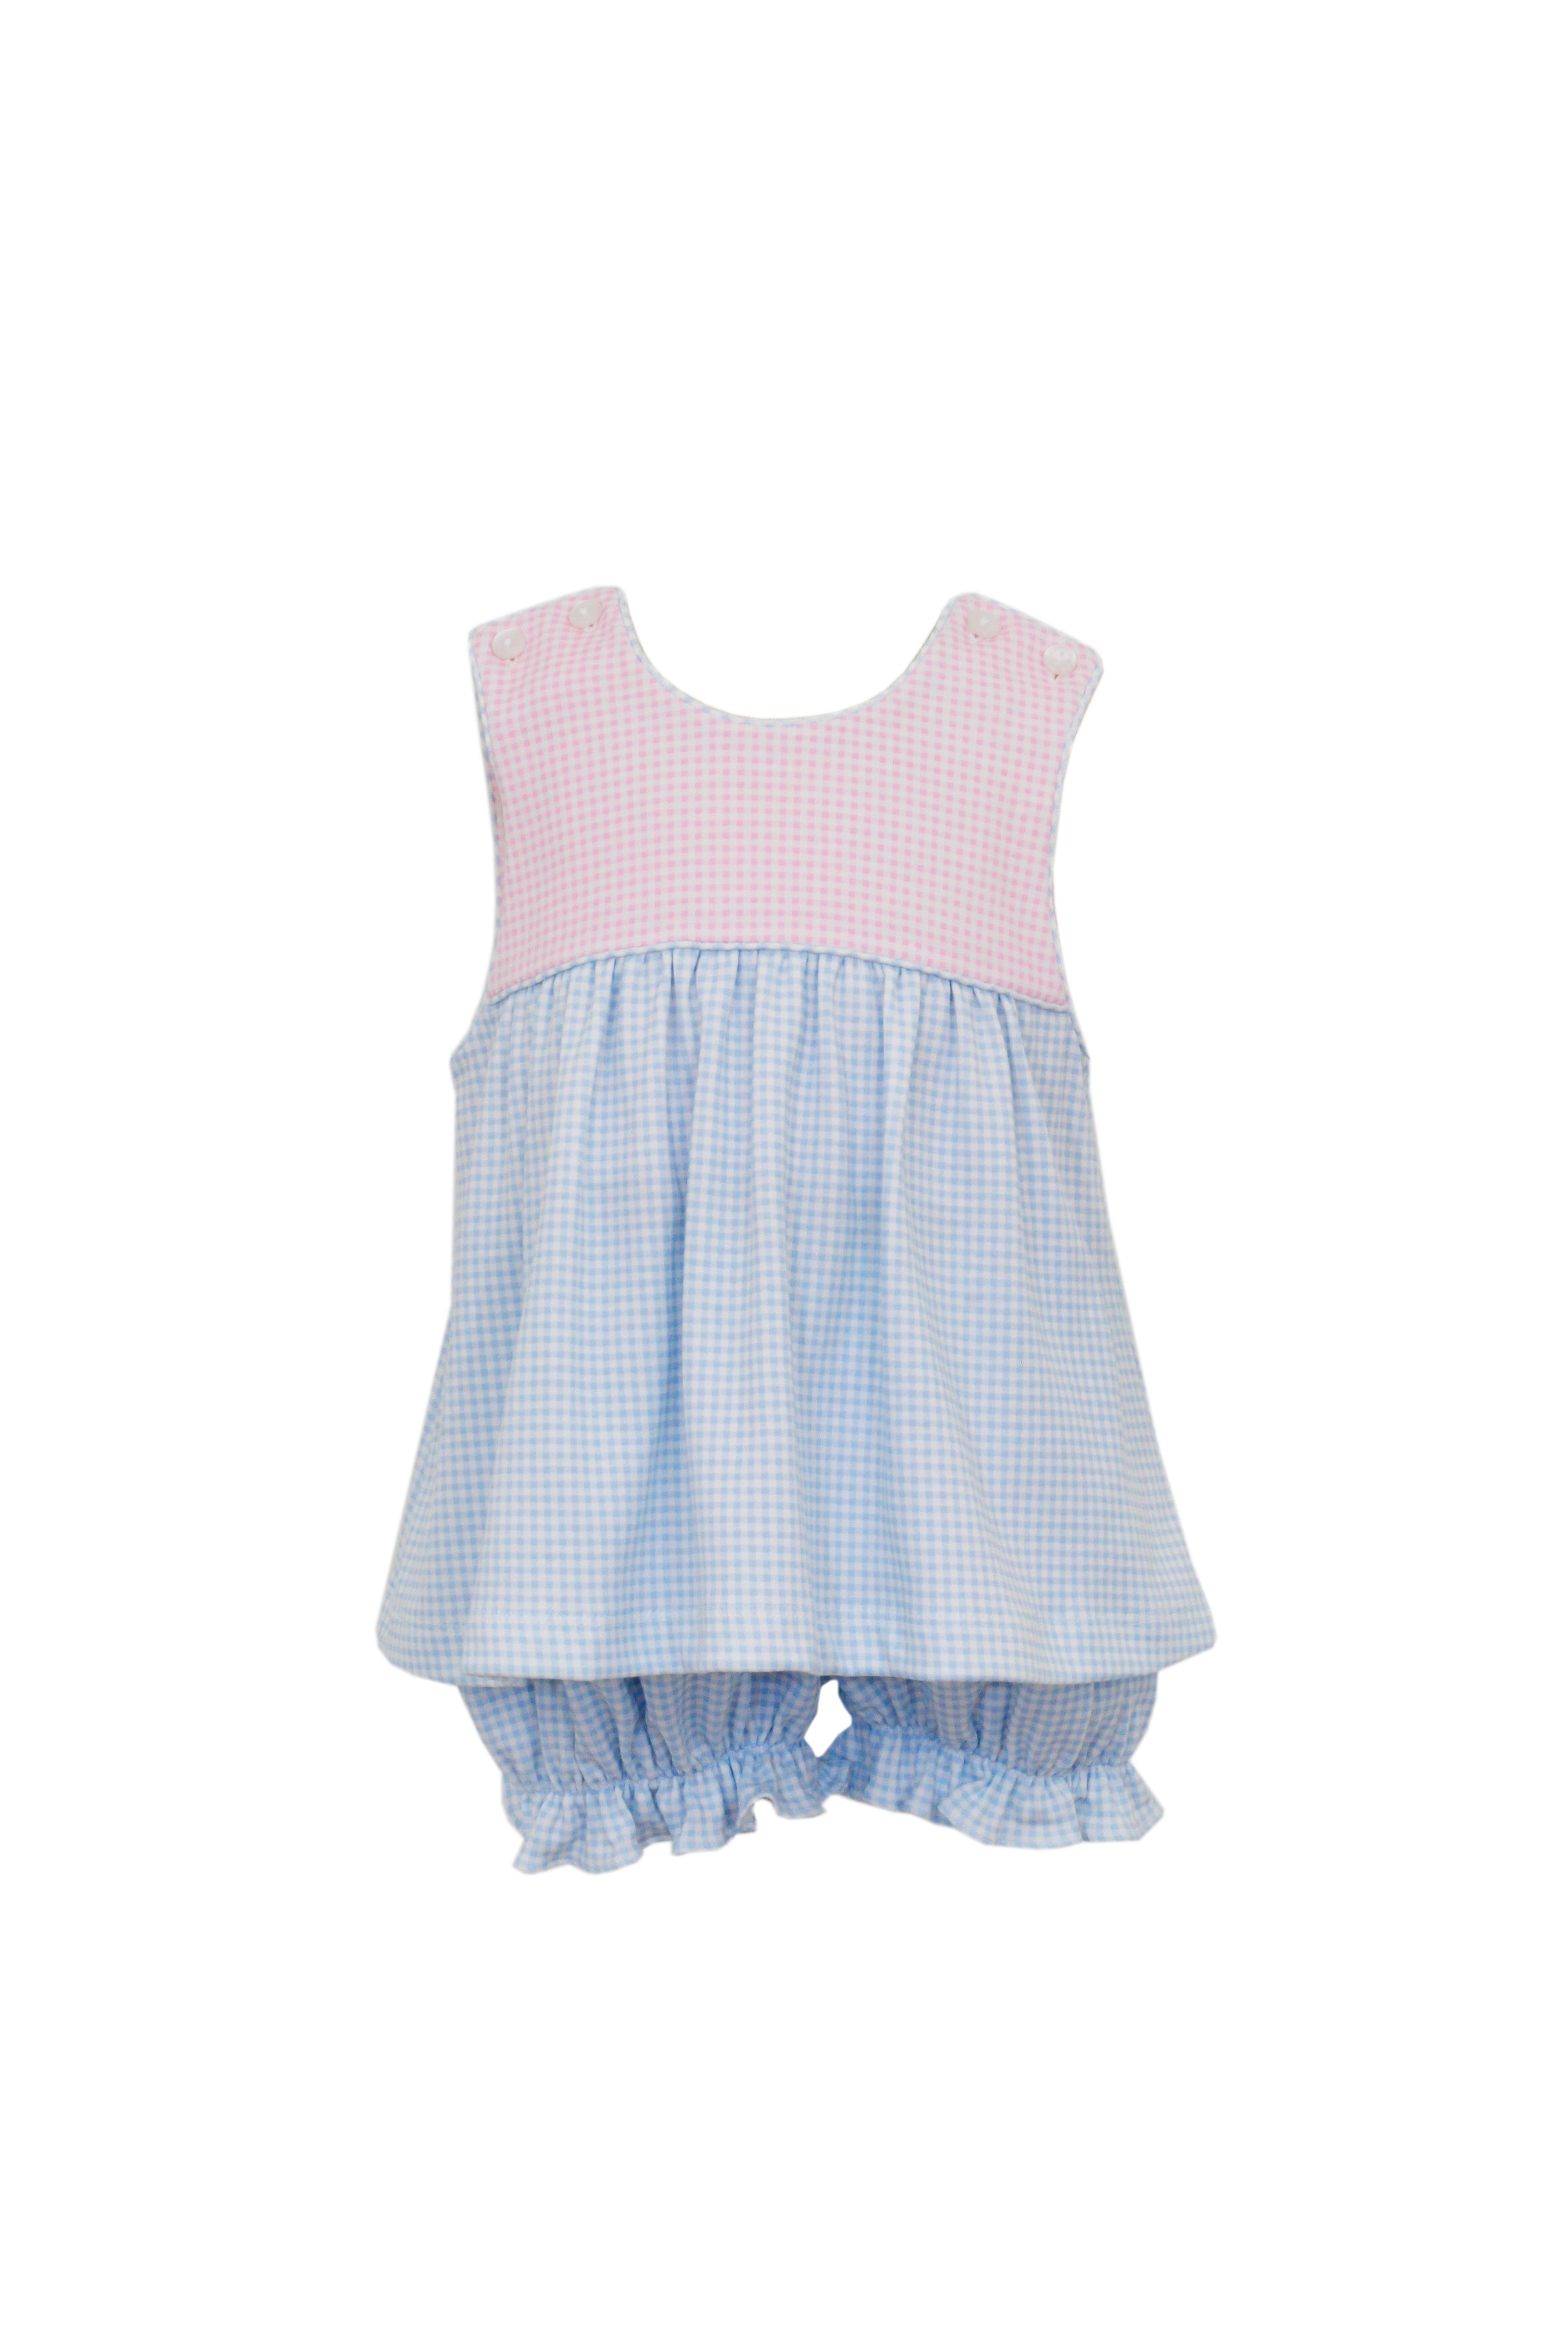 Sienna Blue/Pink Gingham Set (Toddler)